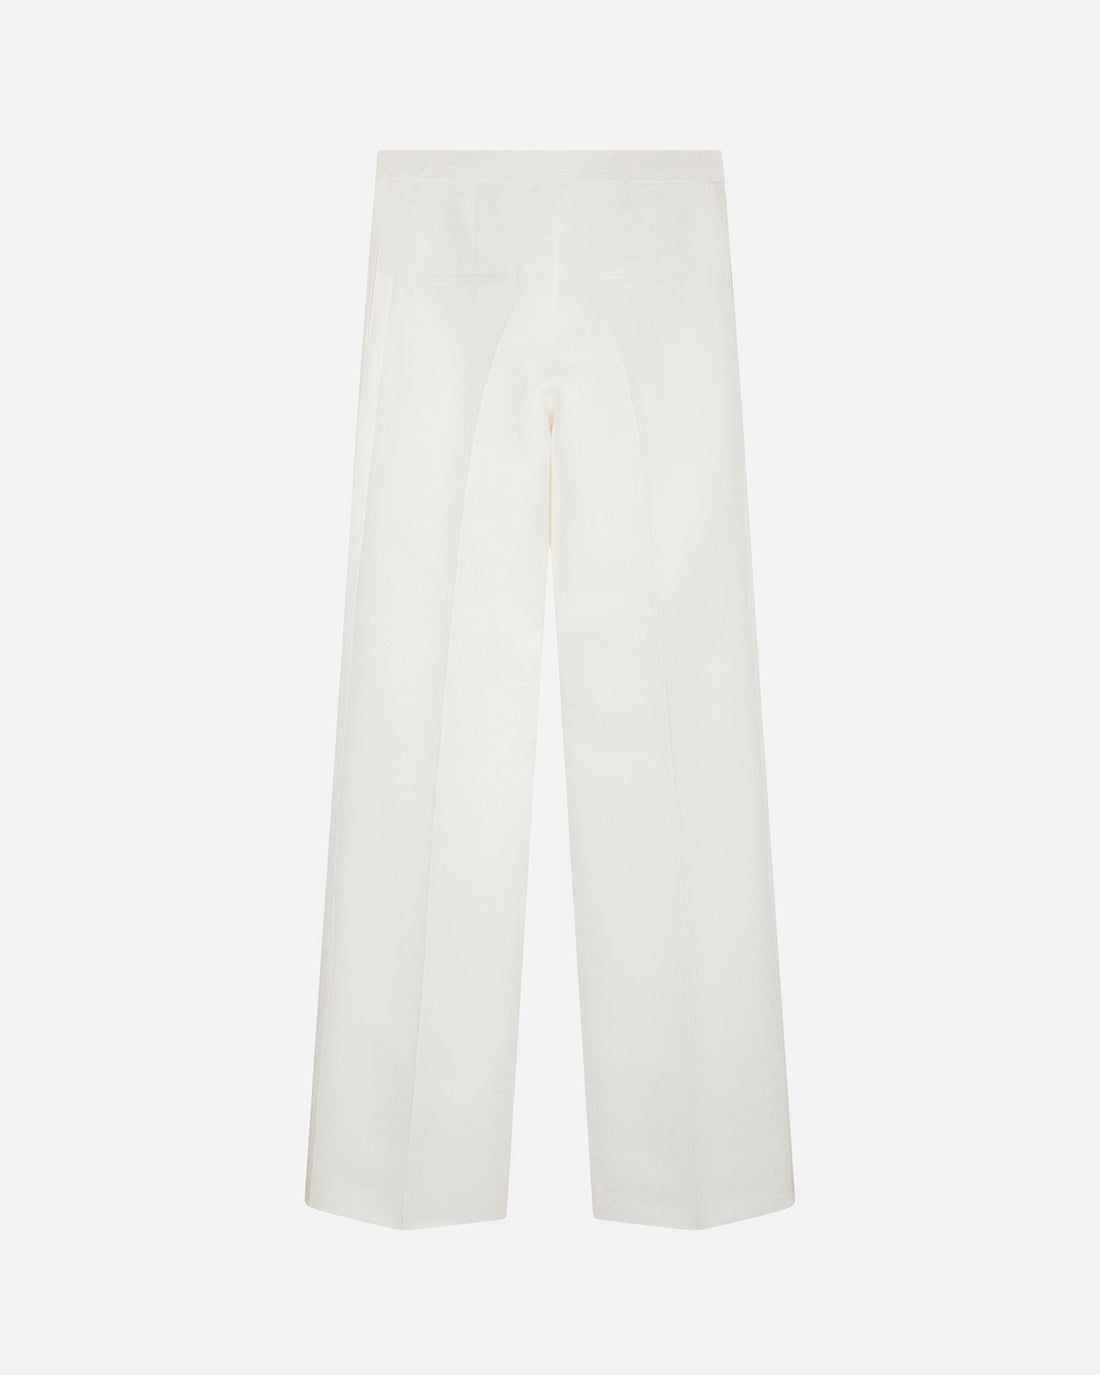 Trousers FOUQUET - PALLAS PARIS -  - CARRYOVER, FOUQUET, TROUSERS, WHITE, WOOL